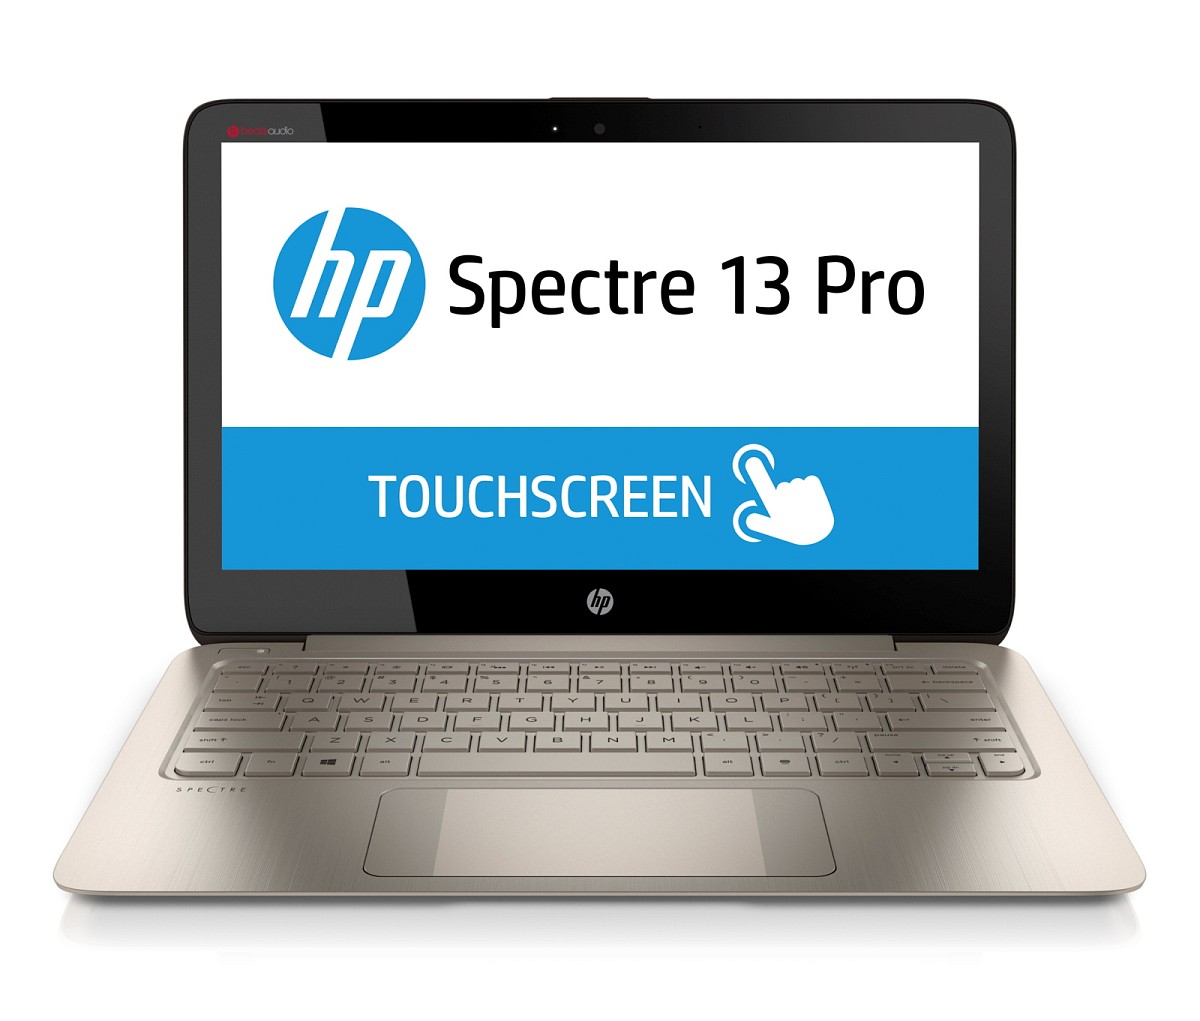 HP Spectre 13 Pro Ultrabook (F1N44EA)